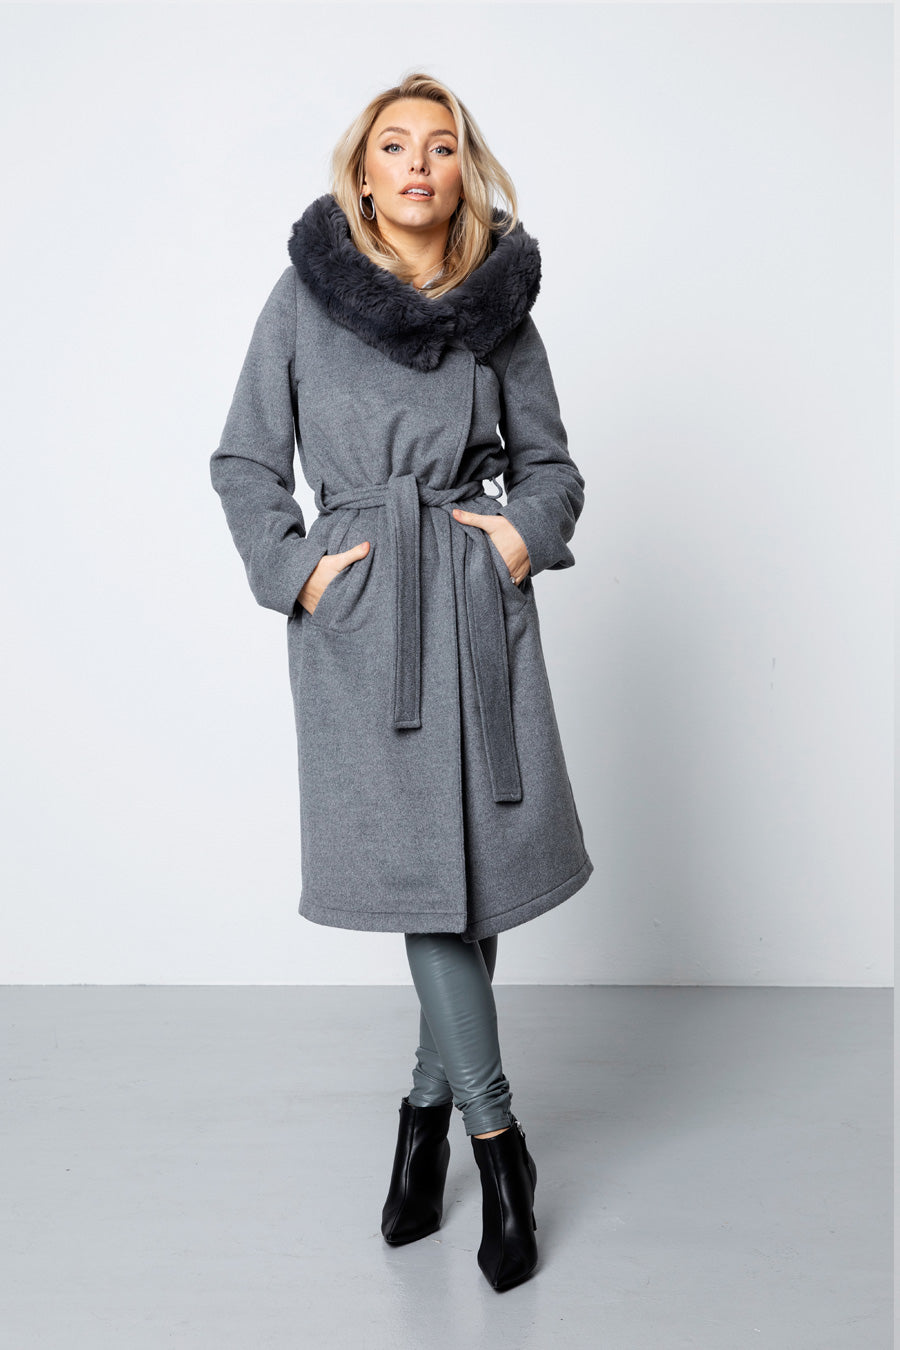 The Long Wool Coat - Grey - Sannealexandra - Model:Sanne